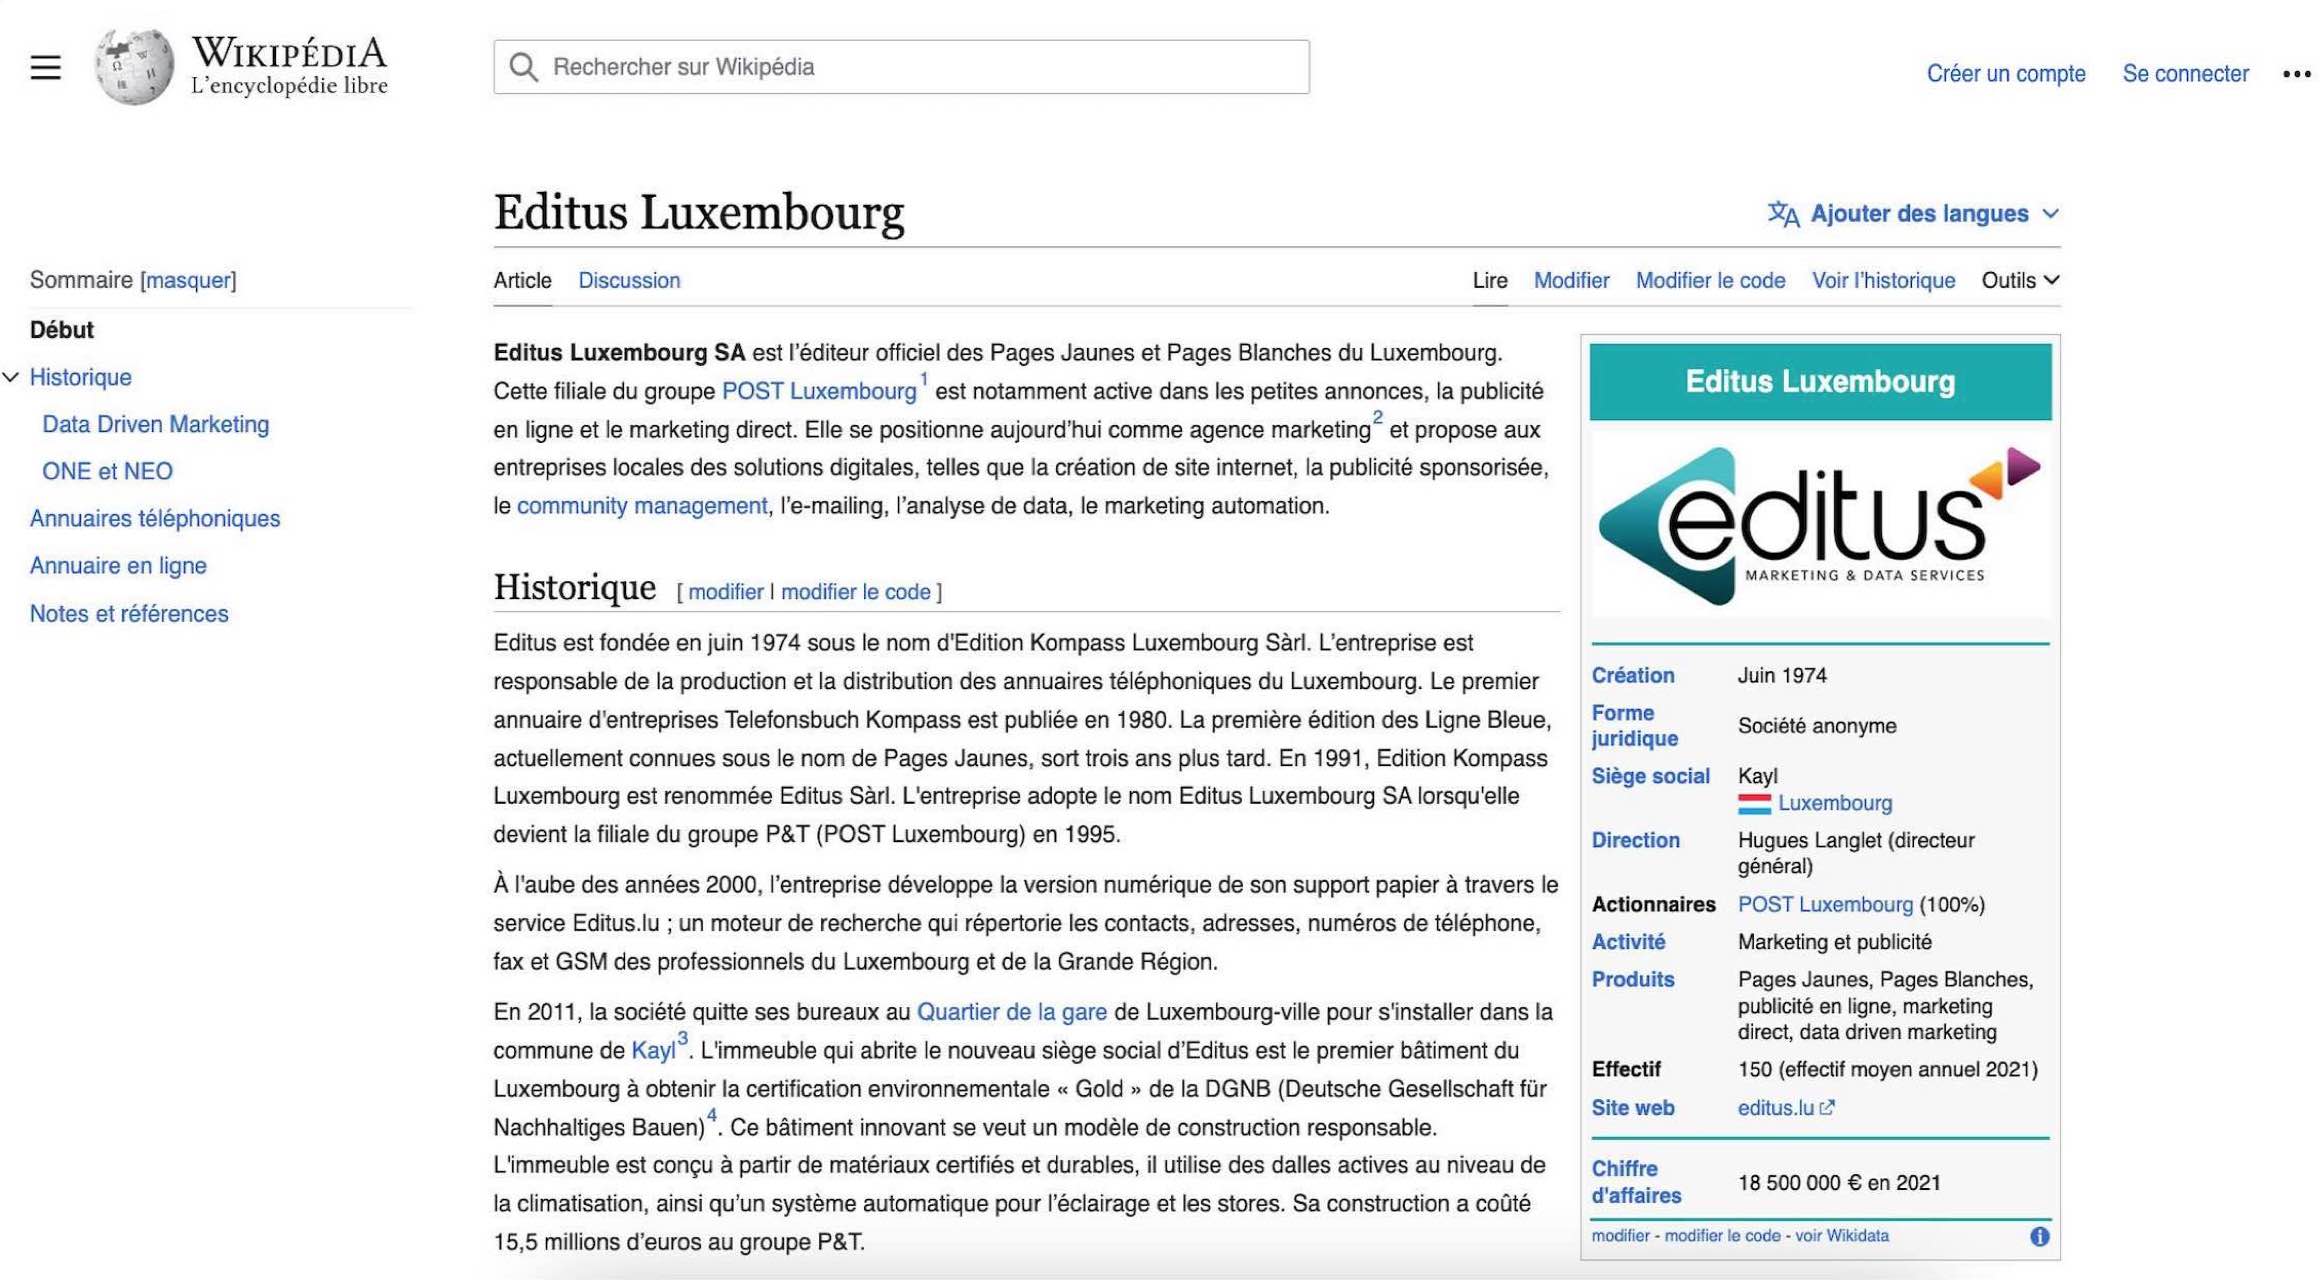 Page Wikipédia de la société Editus Luxembourg SA.